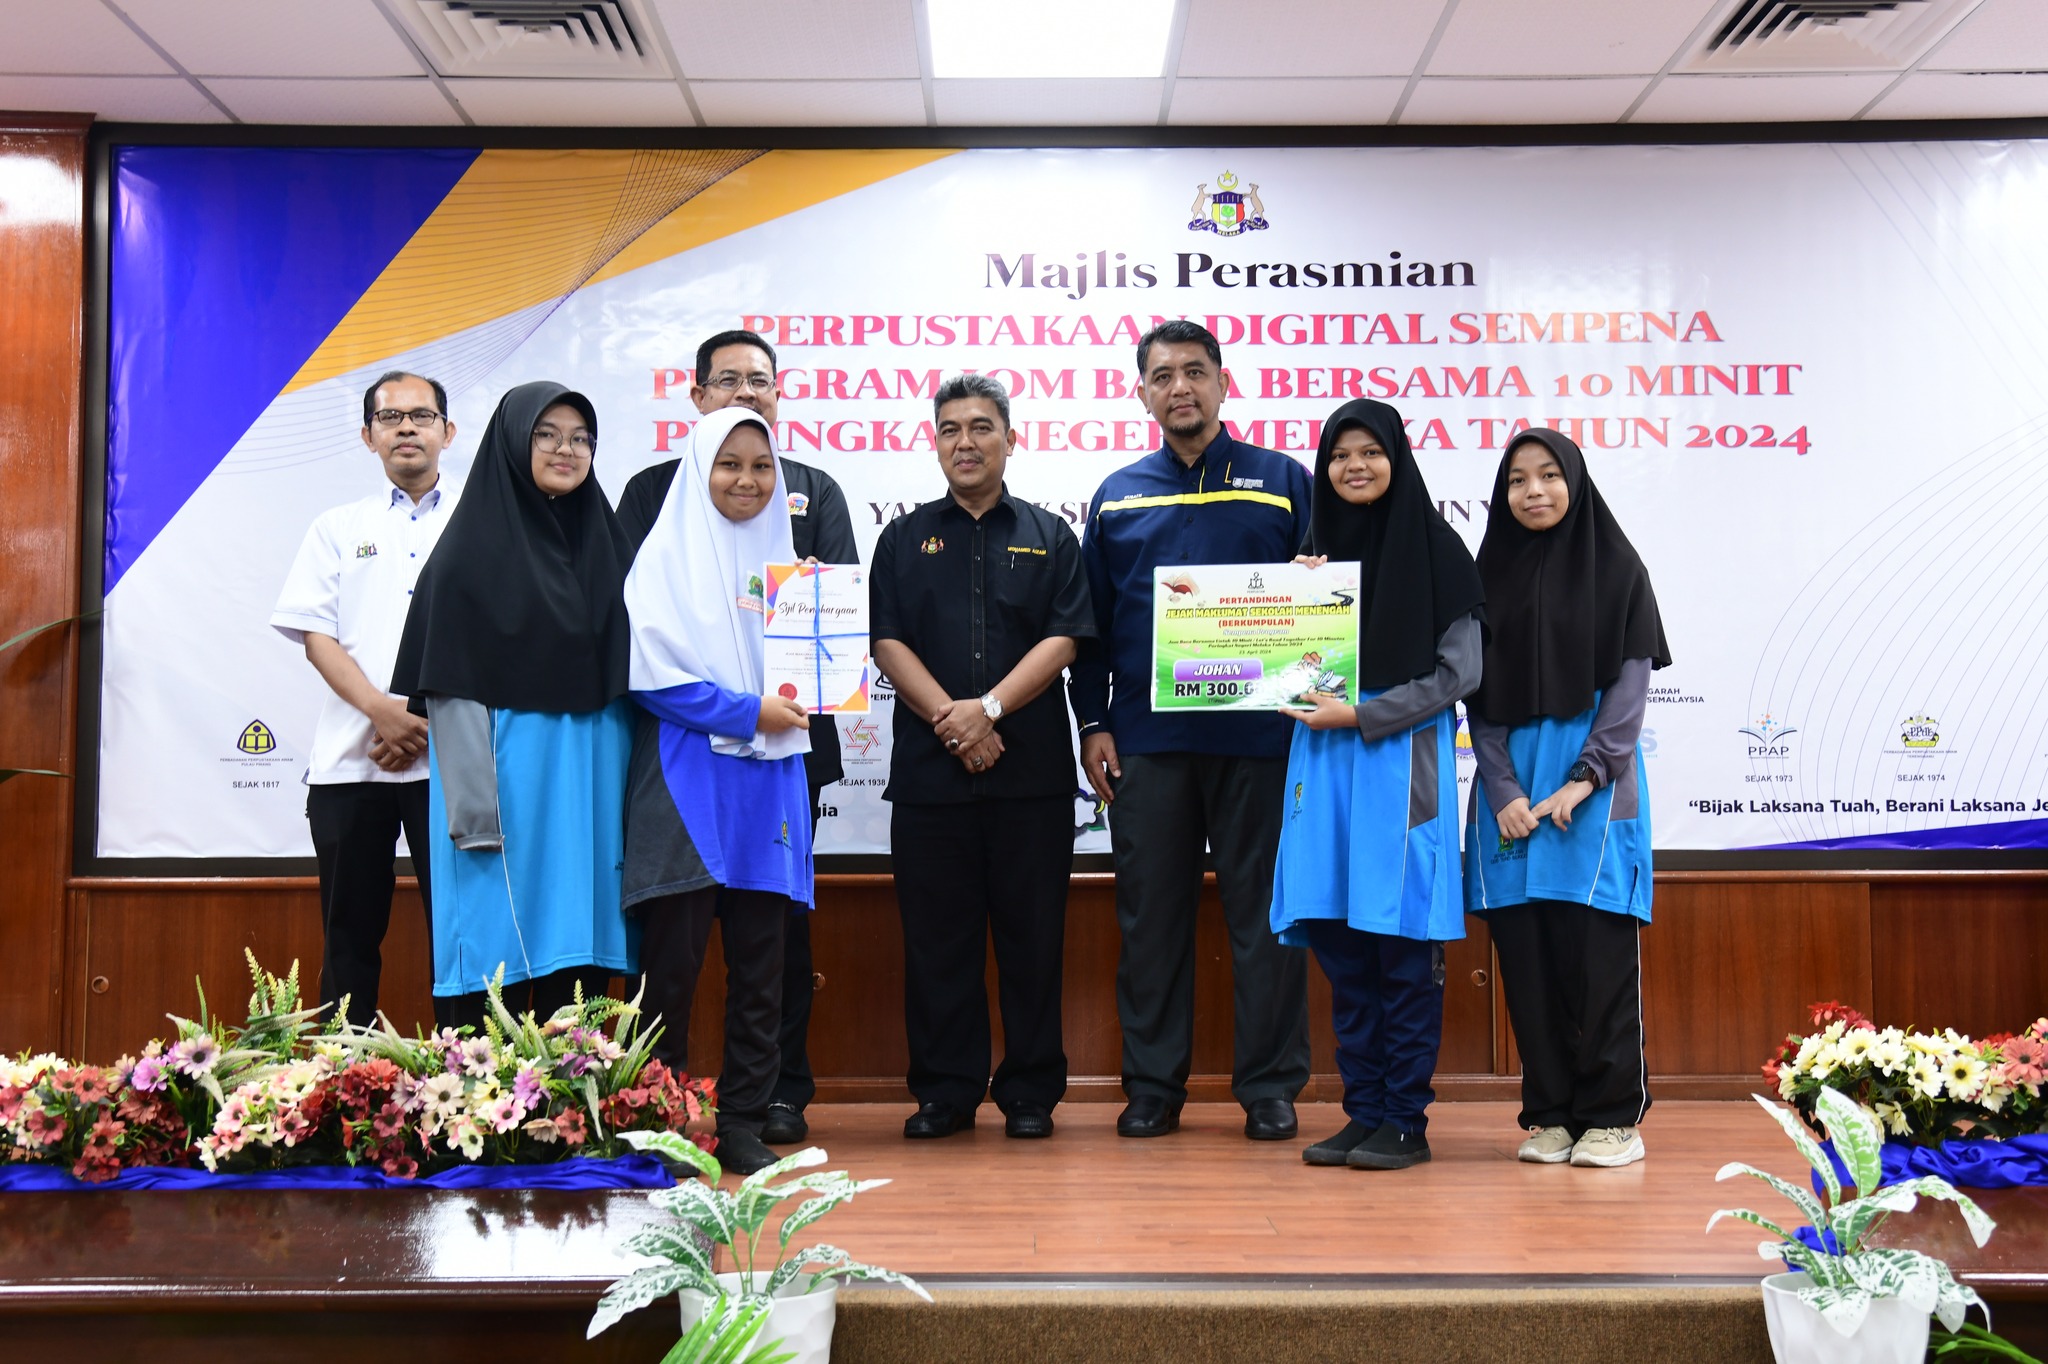 Pertandingan Jejak Maklumat Sempena Program Jom Baca Bersama 10 Minit Peringkat Negeri Melaka Tahun 2024 3